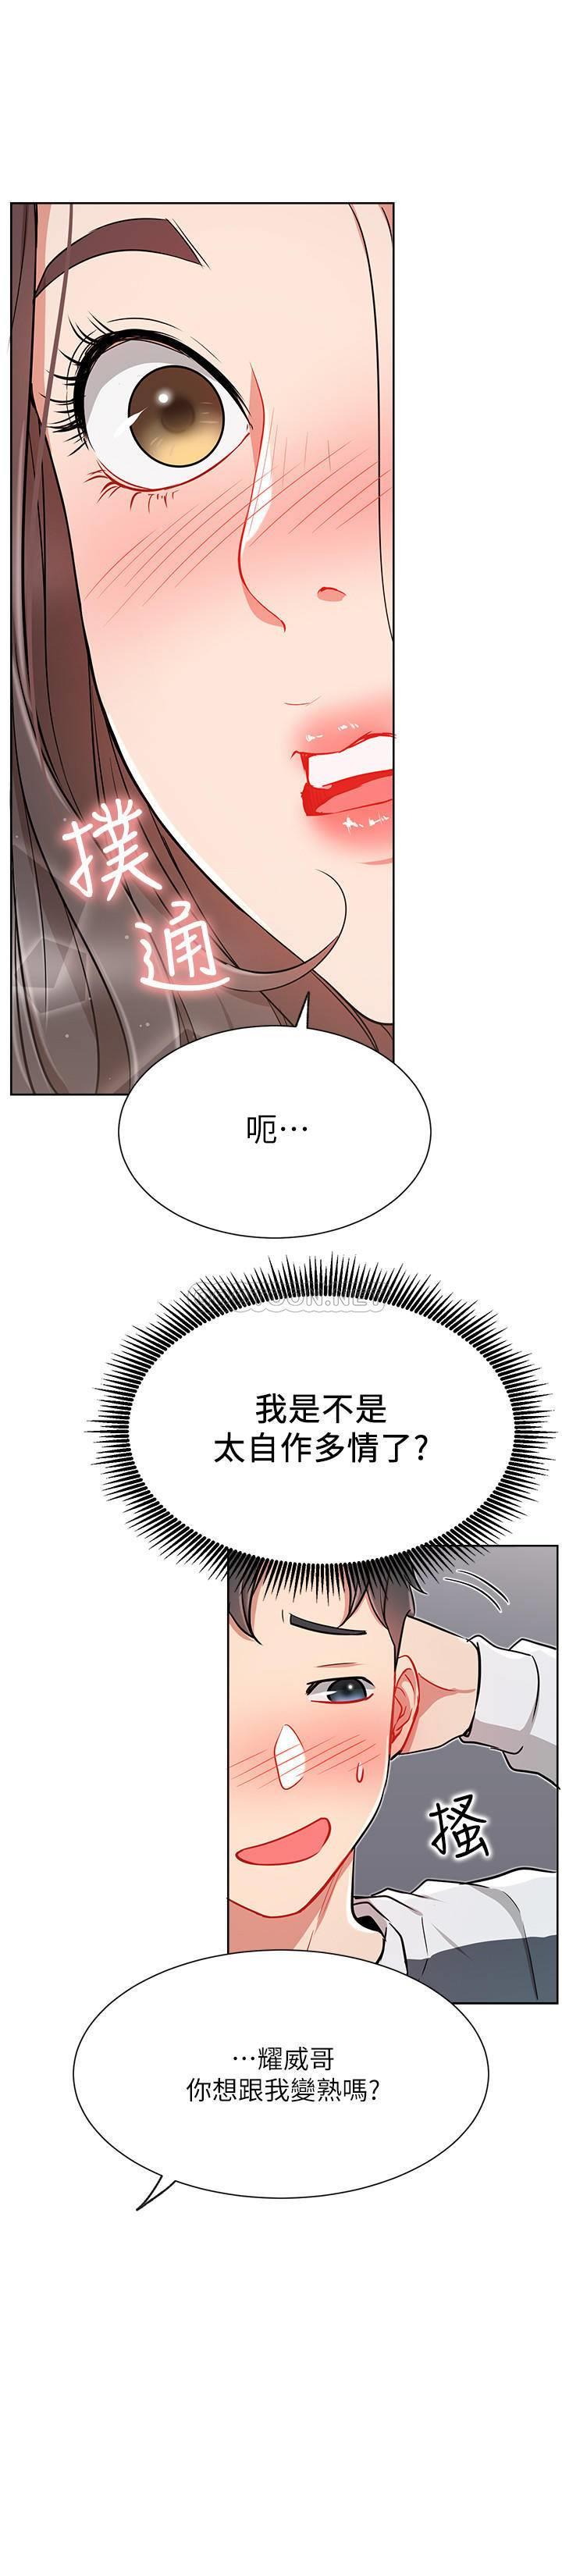 《网红私生活》漫画 第12话 - 耀威哥…不要走